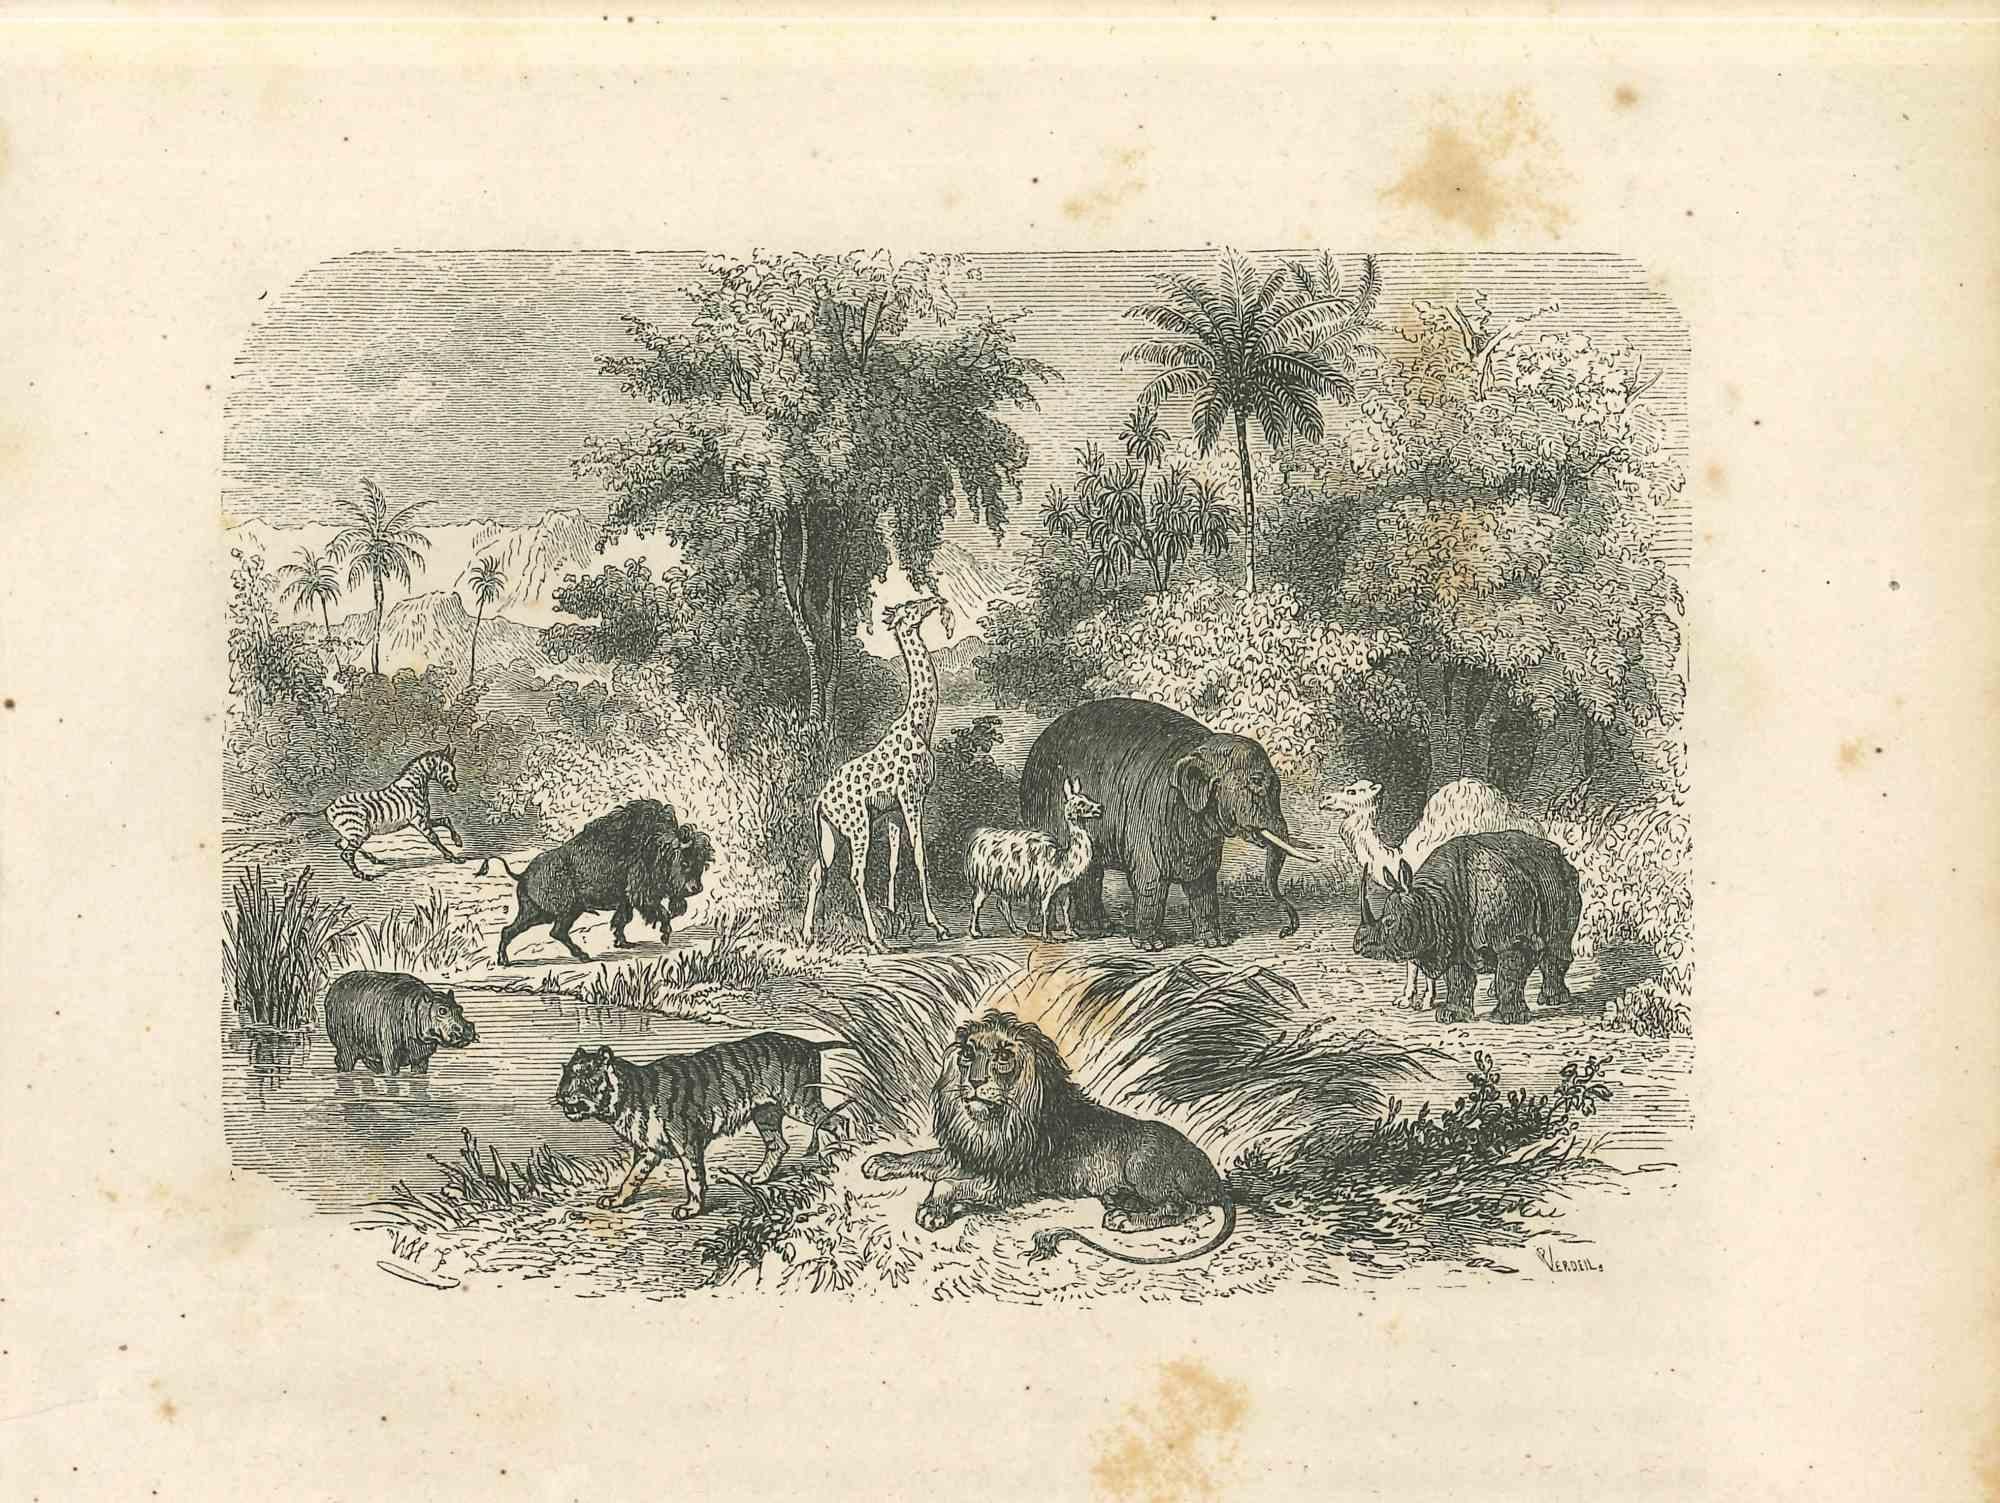 Les animaux dans la jungle est une lithographie originale sur papier couleur ivoire, réalisée par Paul Gervais (1816-1879). L'œuvre est tirée de la série "Les Trois Règnes de la Nature", et a été publiée en 1854.

Bon état avec une petite